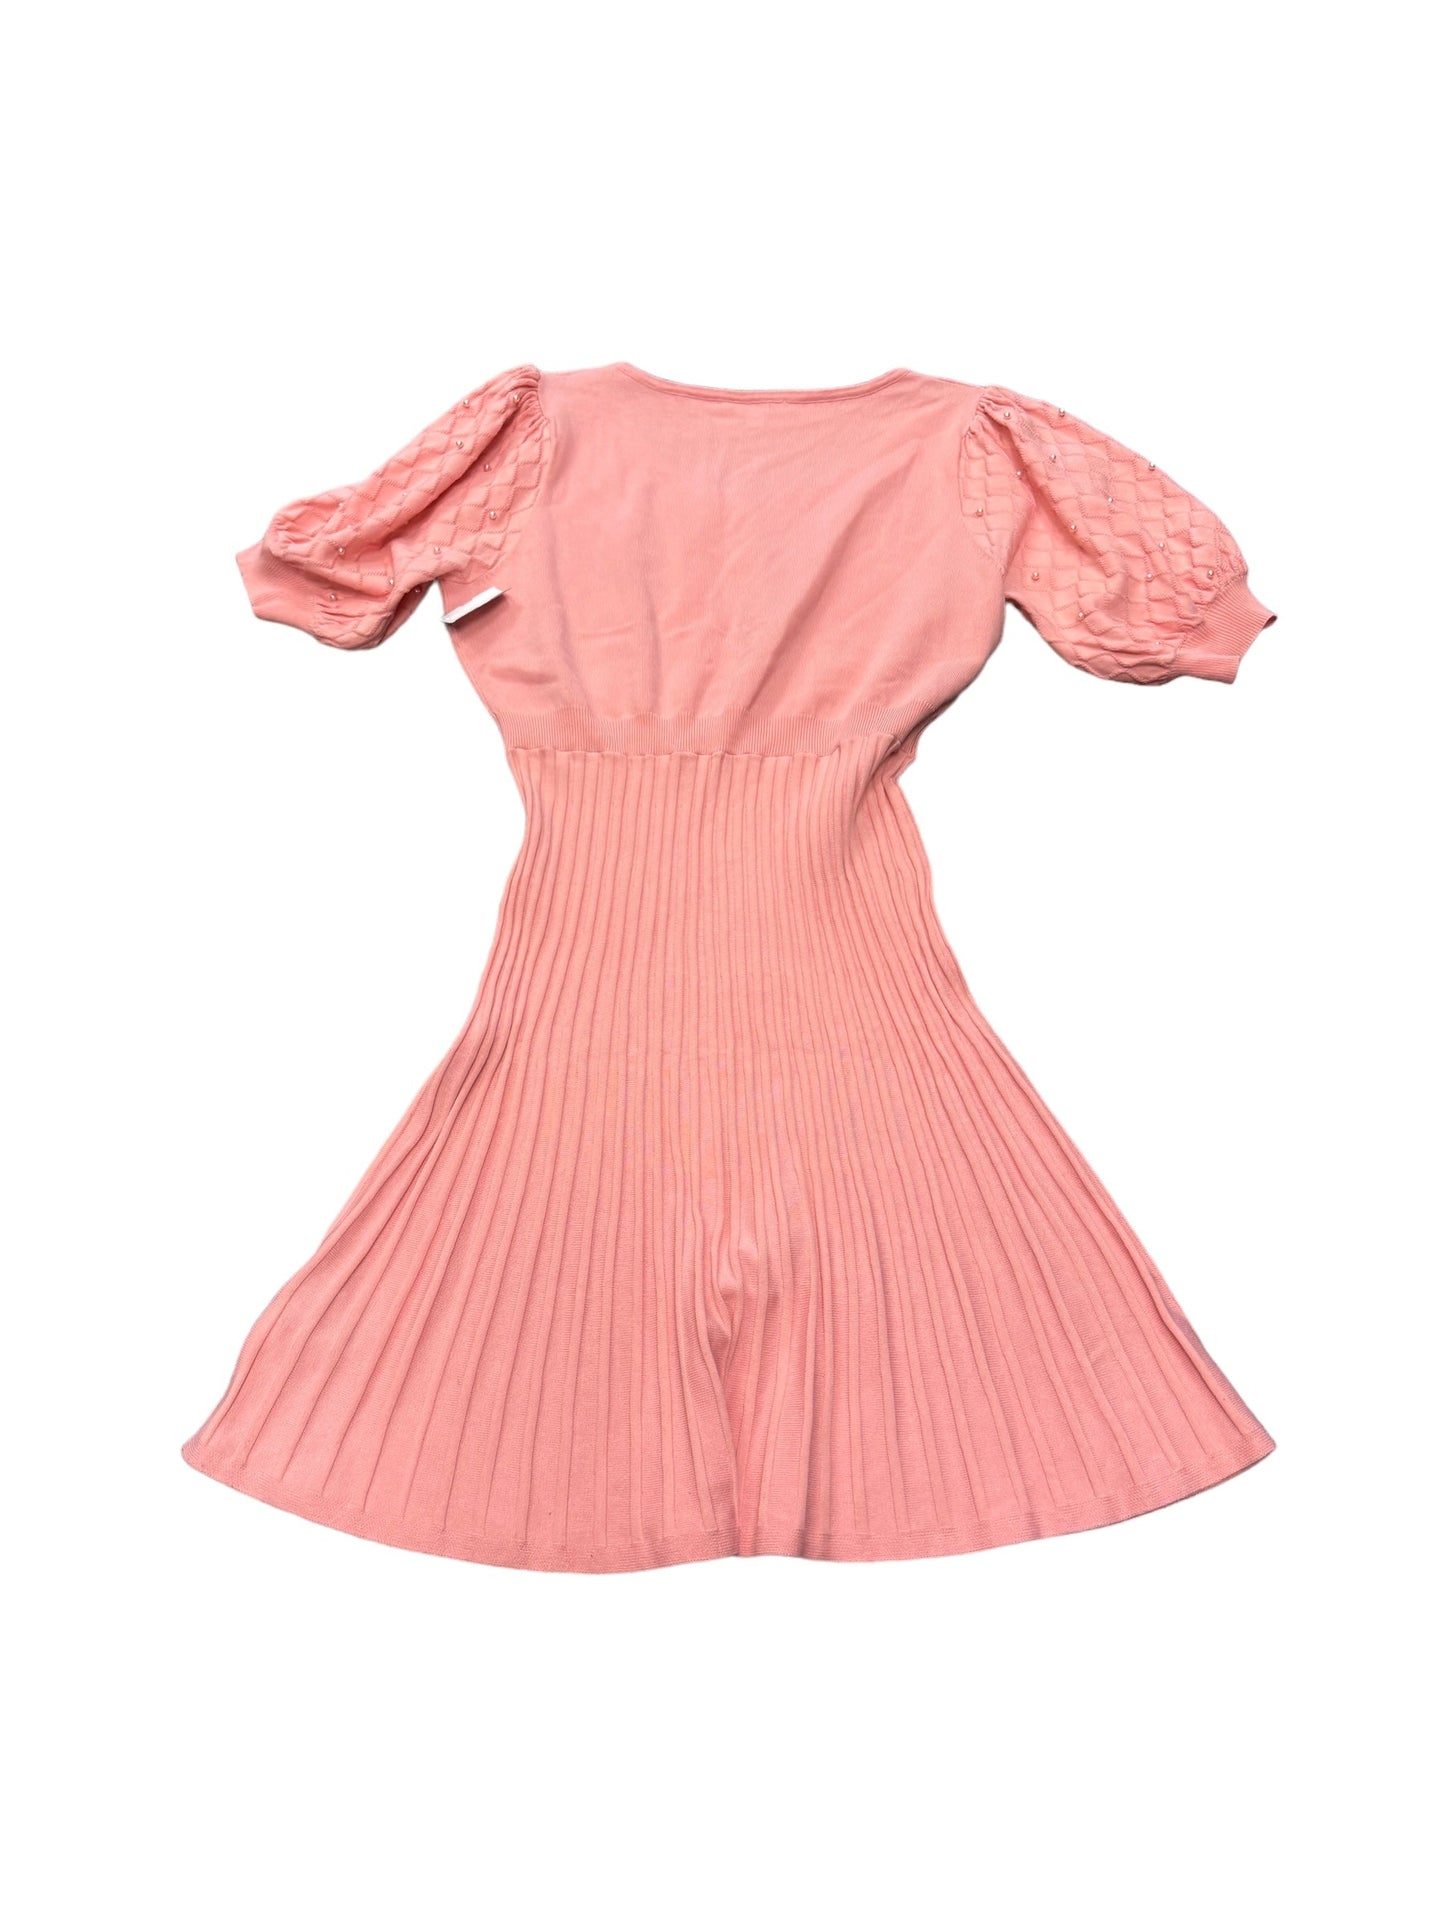 Dress Casual Midi By Nanette By Nanette Lepore  Size: 14